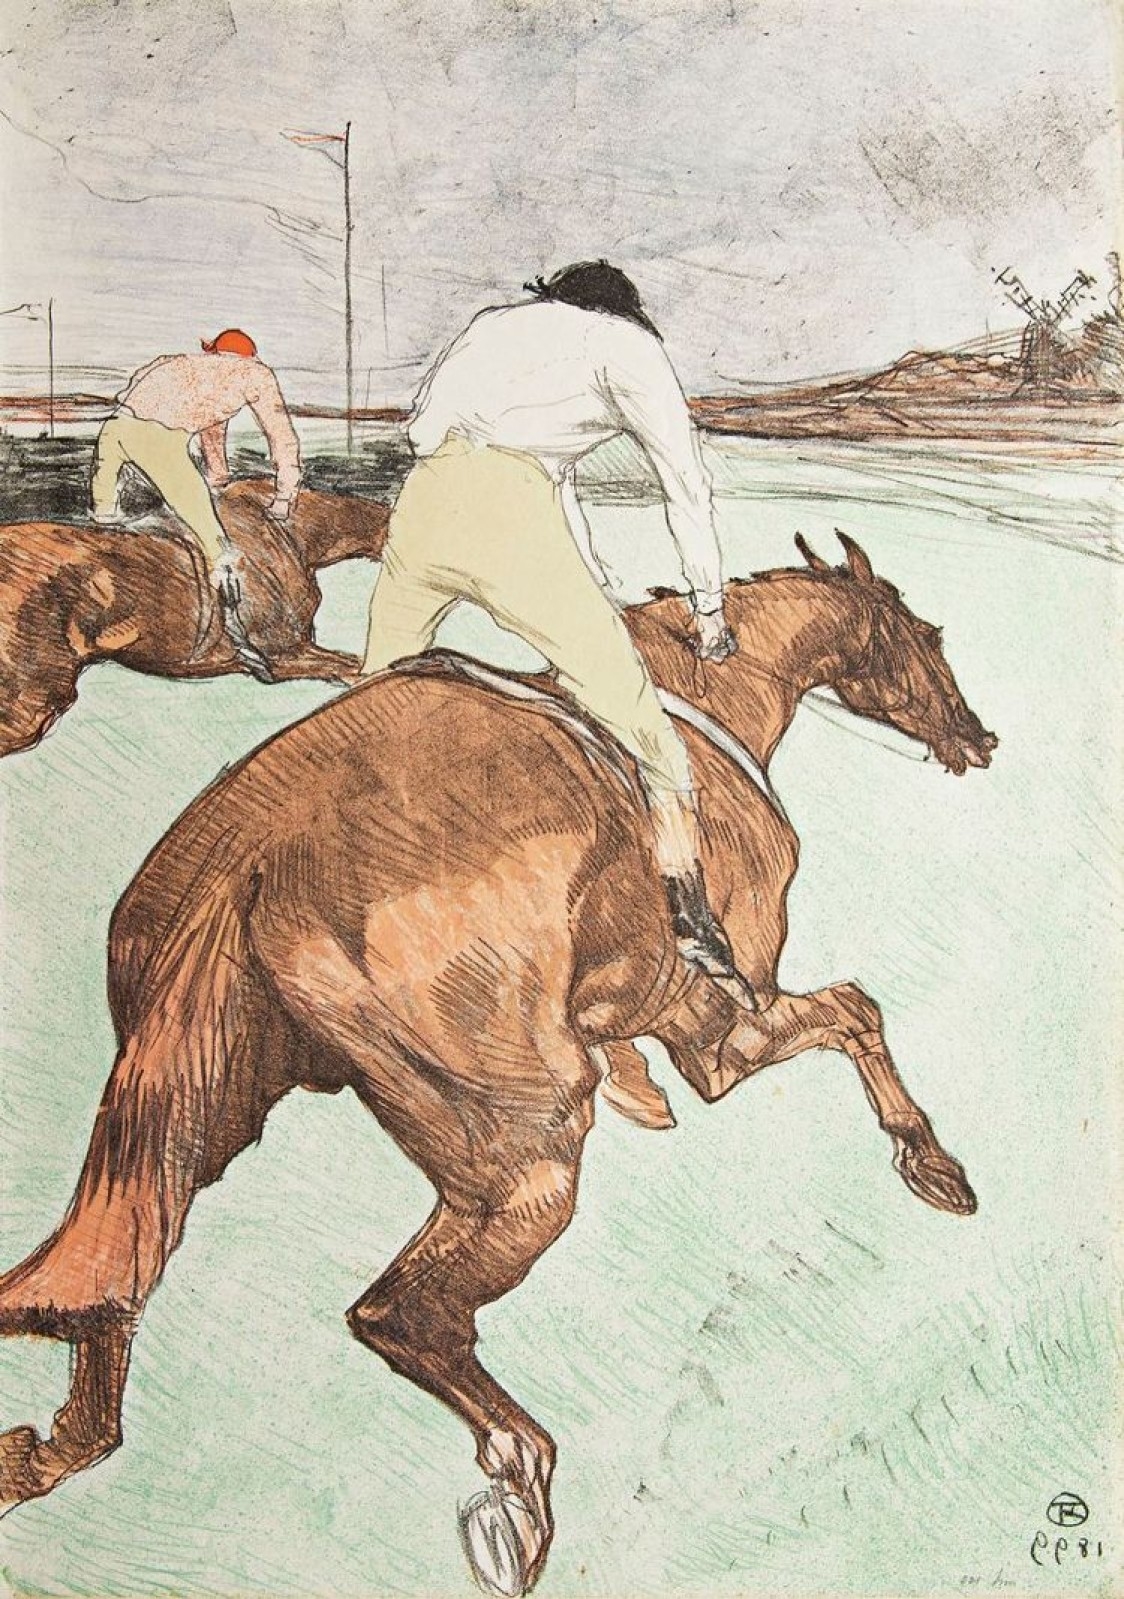 Le Jockey by Henri de Toulouse-Lautrec, 1899